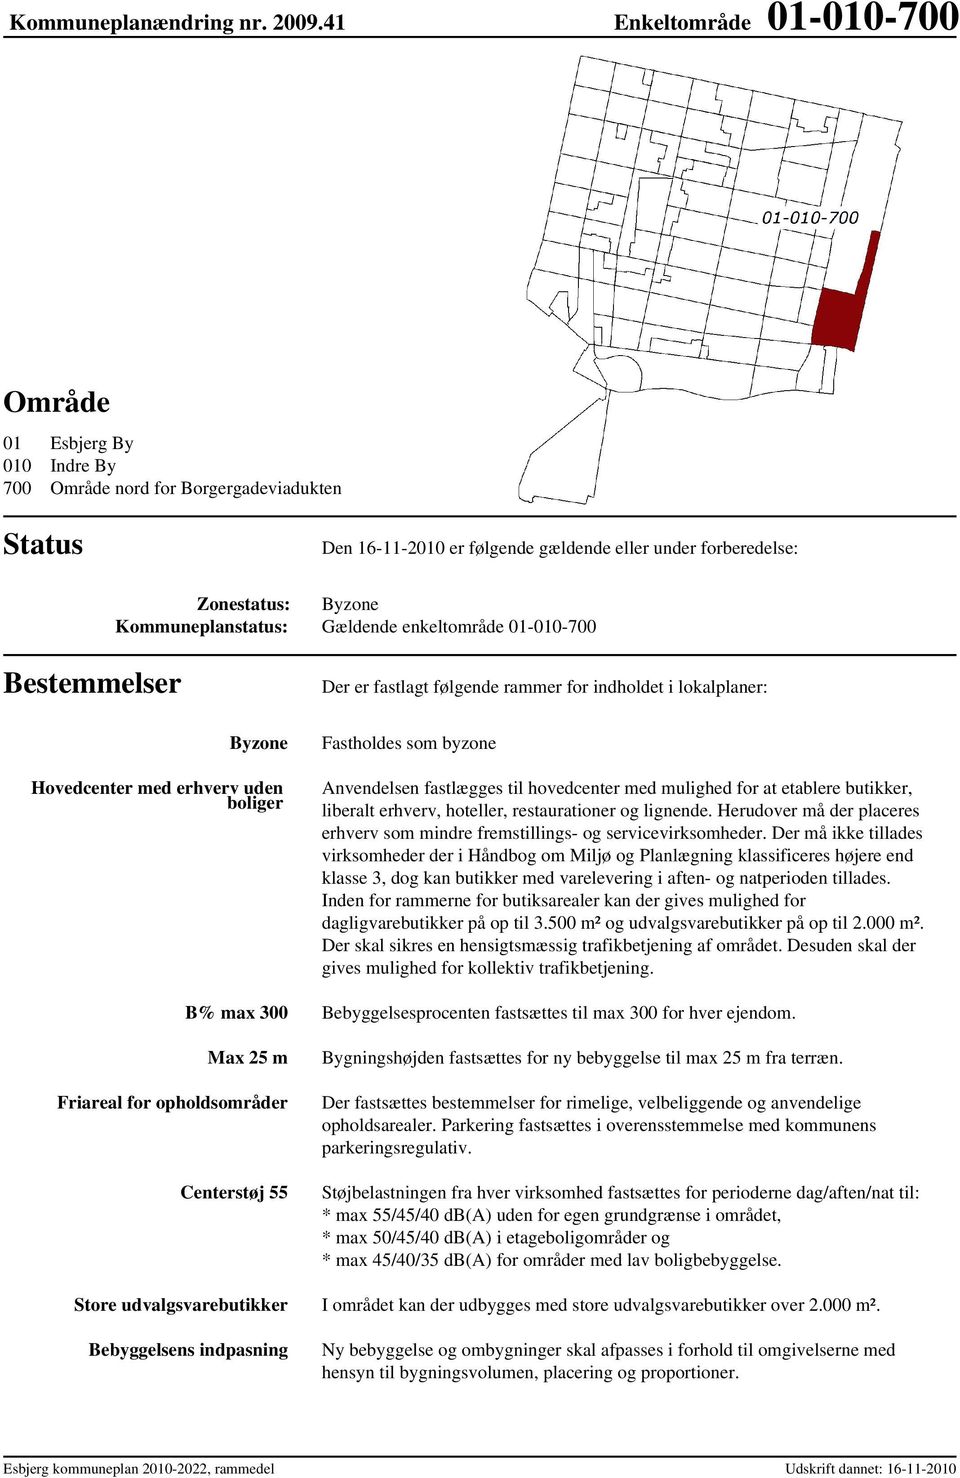 Kommuneplanstatus: Gældende enkeltområde 01-010-700 Bestemmelser Der er fastlagt følgende rammer for indholdet i lokalplaner: Byzone Hovedcenter med erhverv uden boliger Fastholdes som byzone